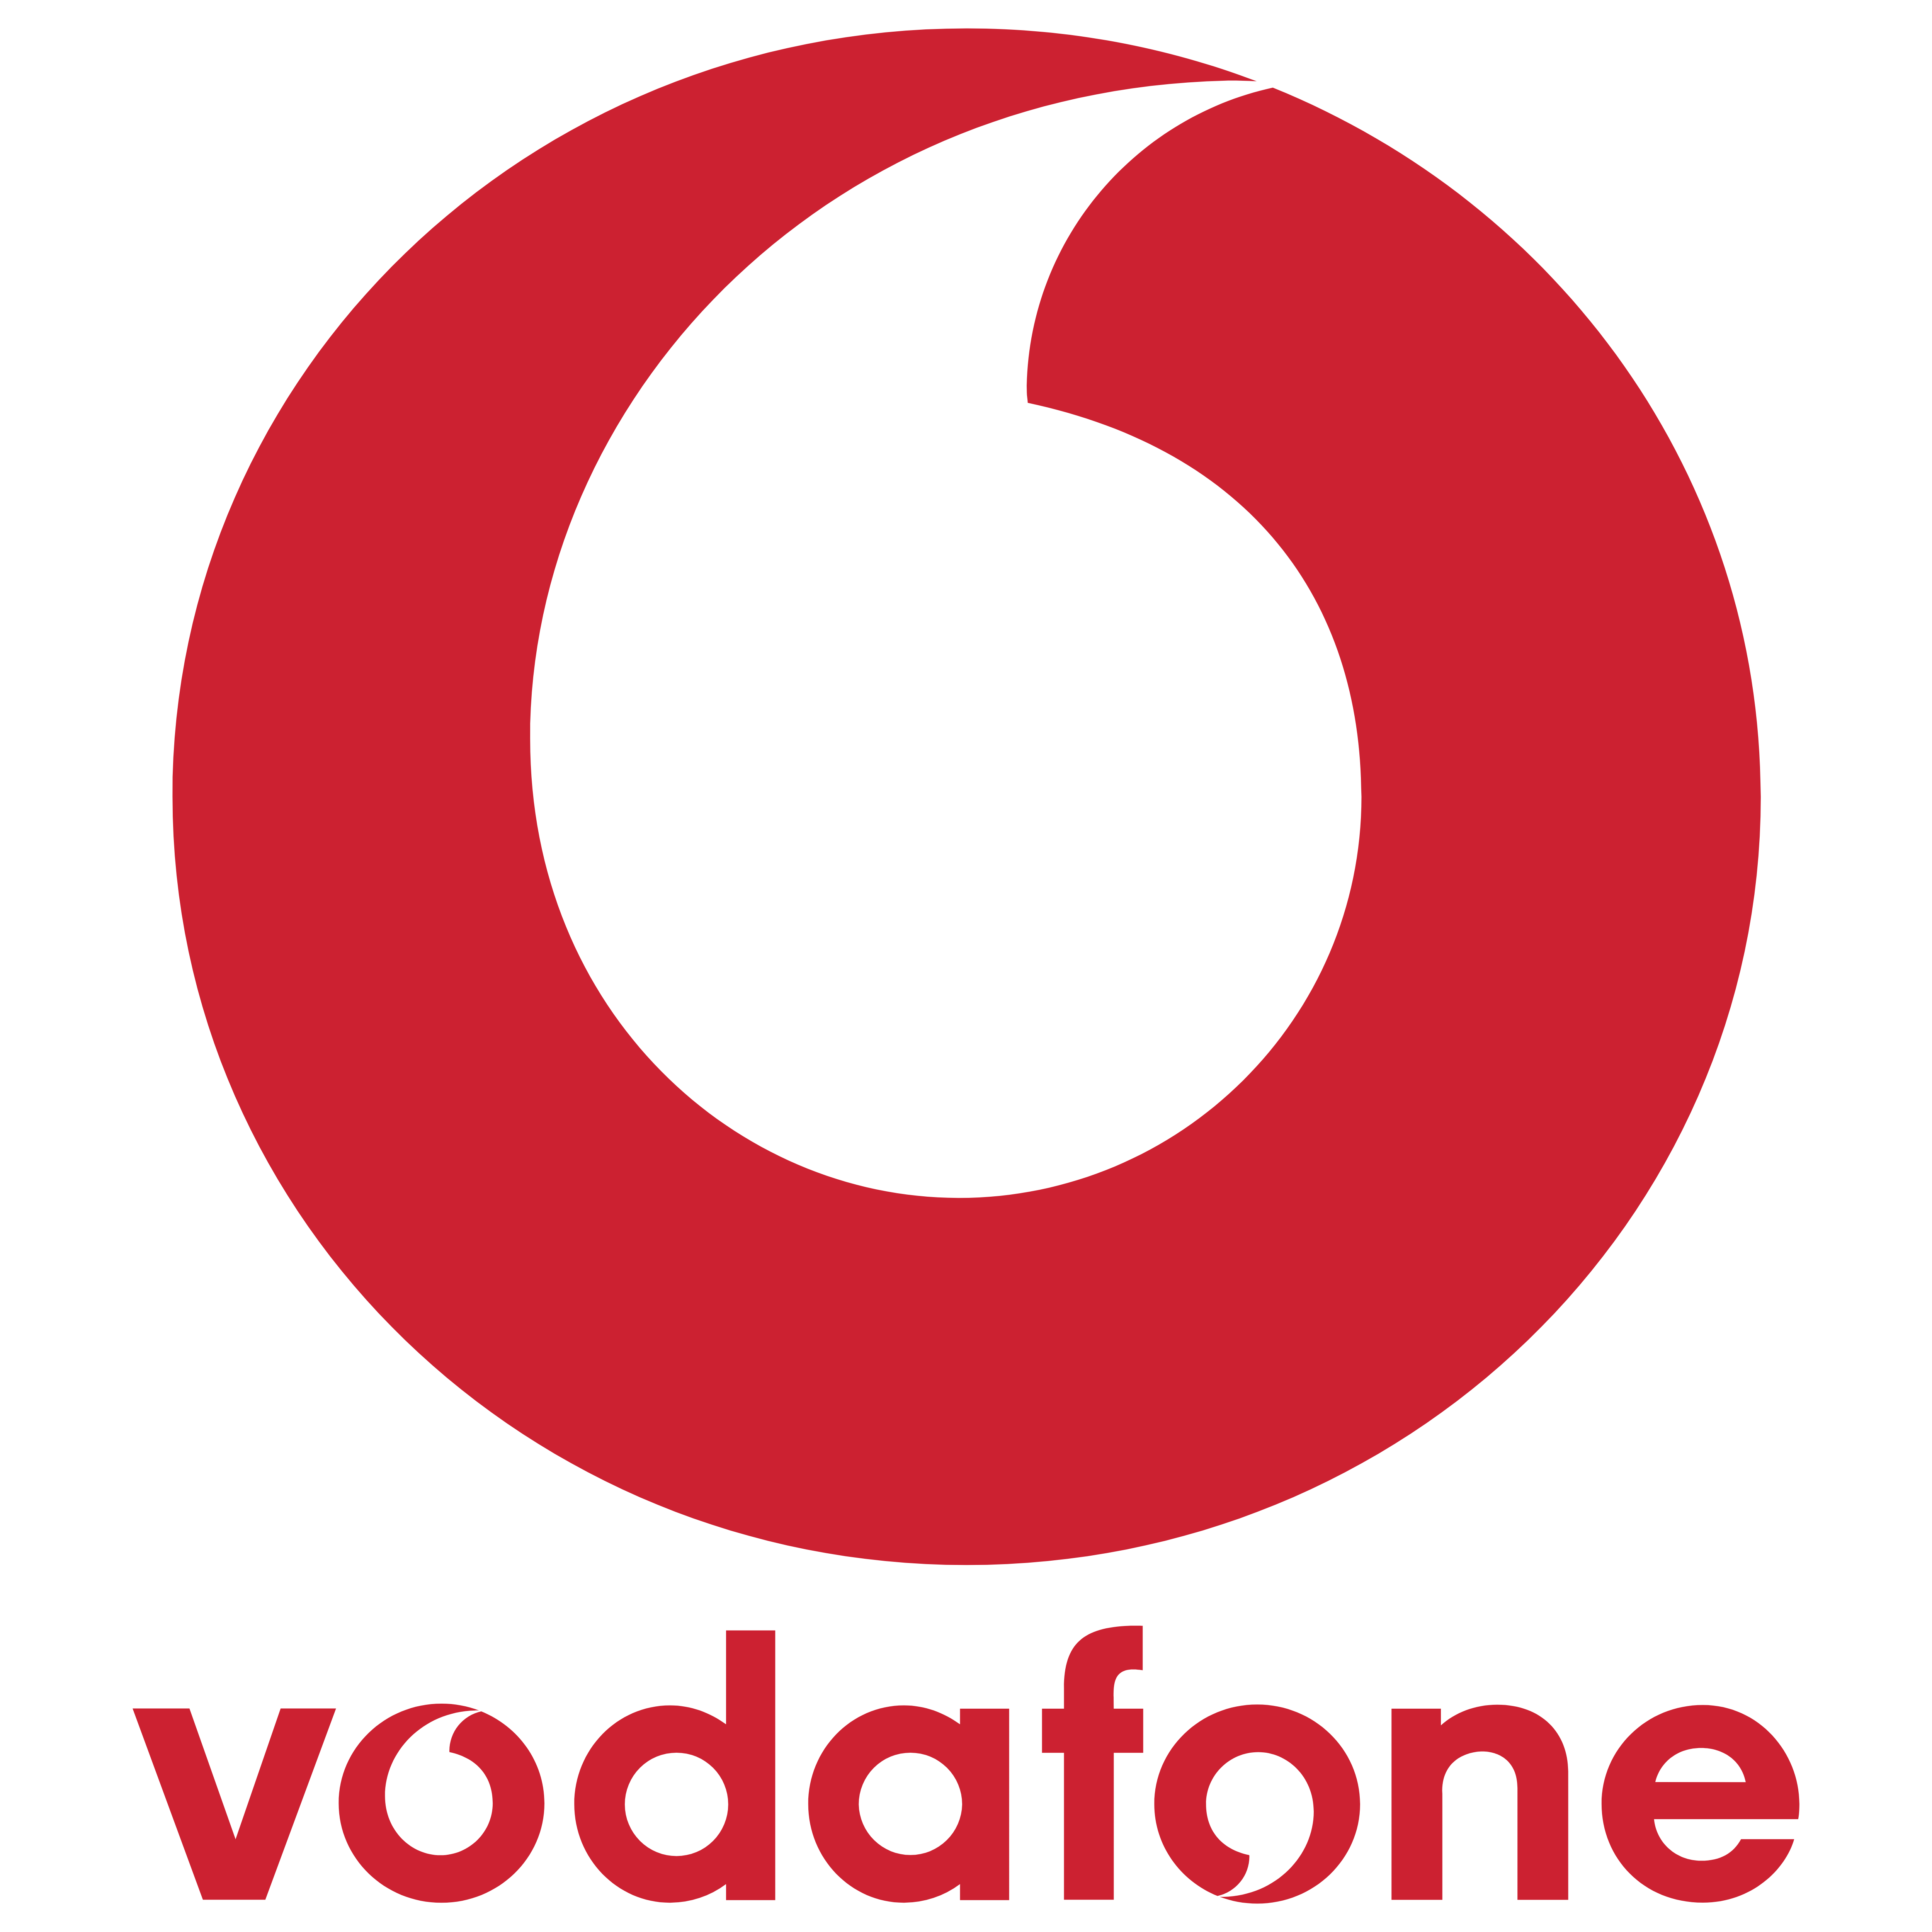 Brand New: New Logo For Vodaf